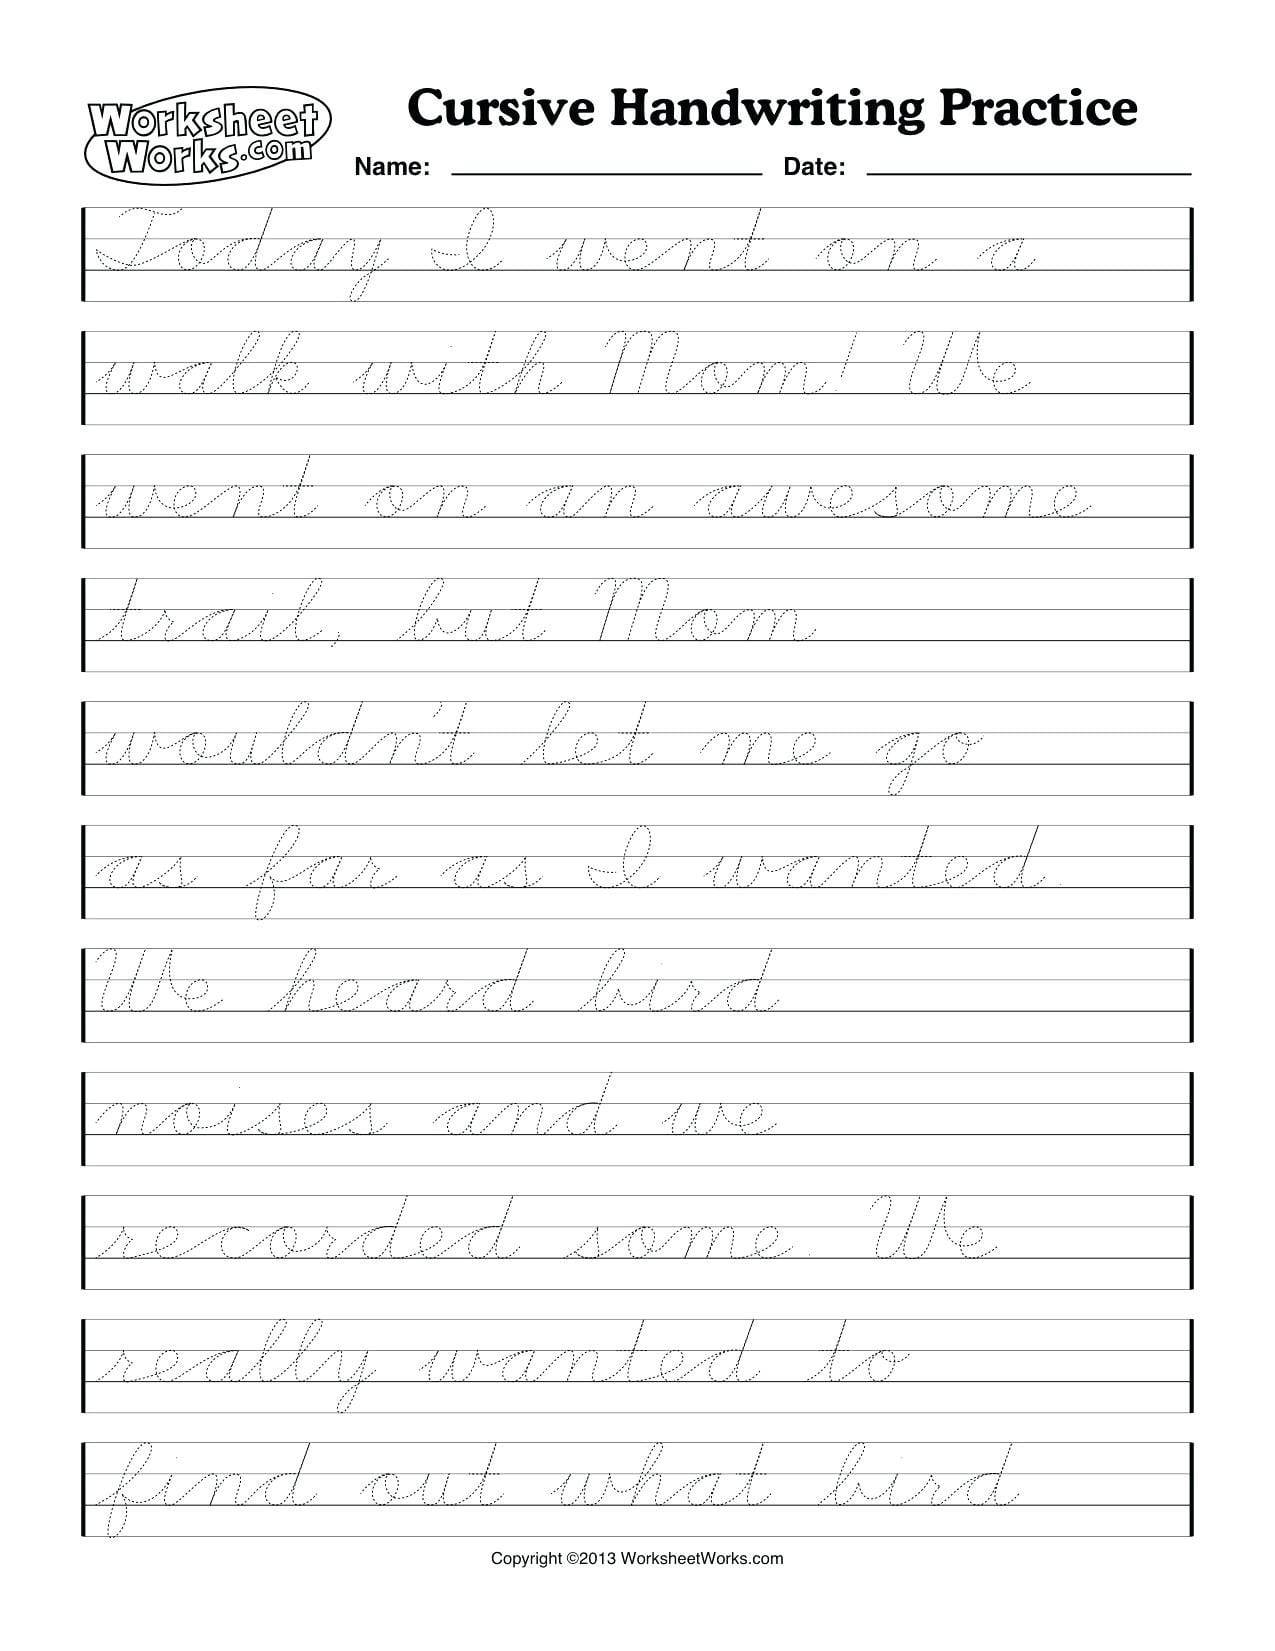 6th-grade-cursive-handwriting-worksheets-holiday-handwriting-db-excel